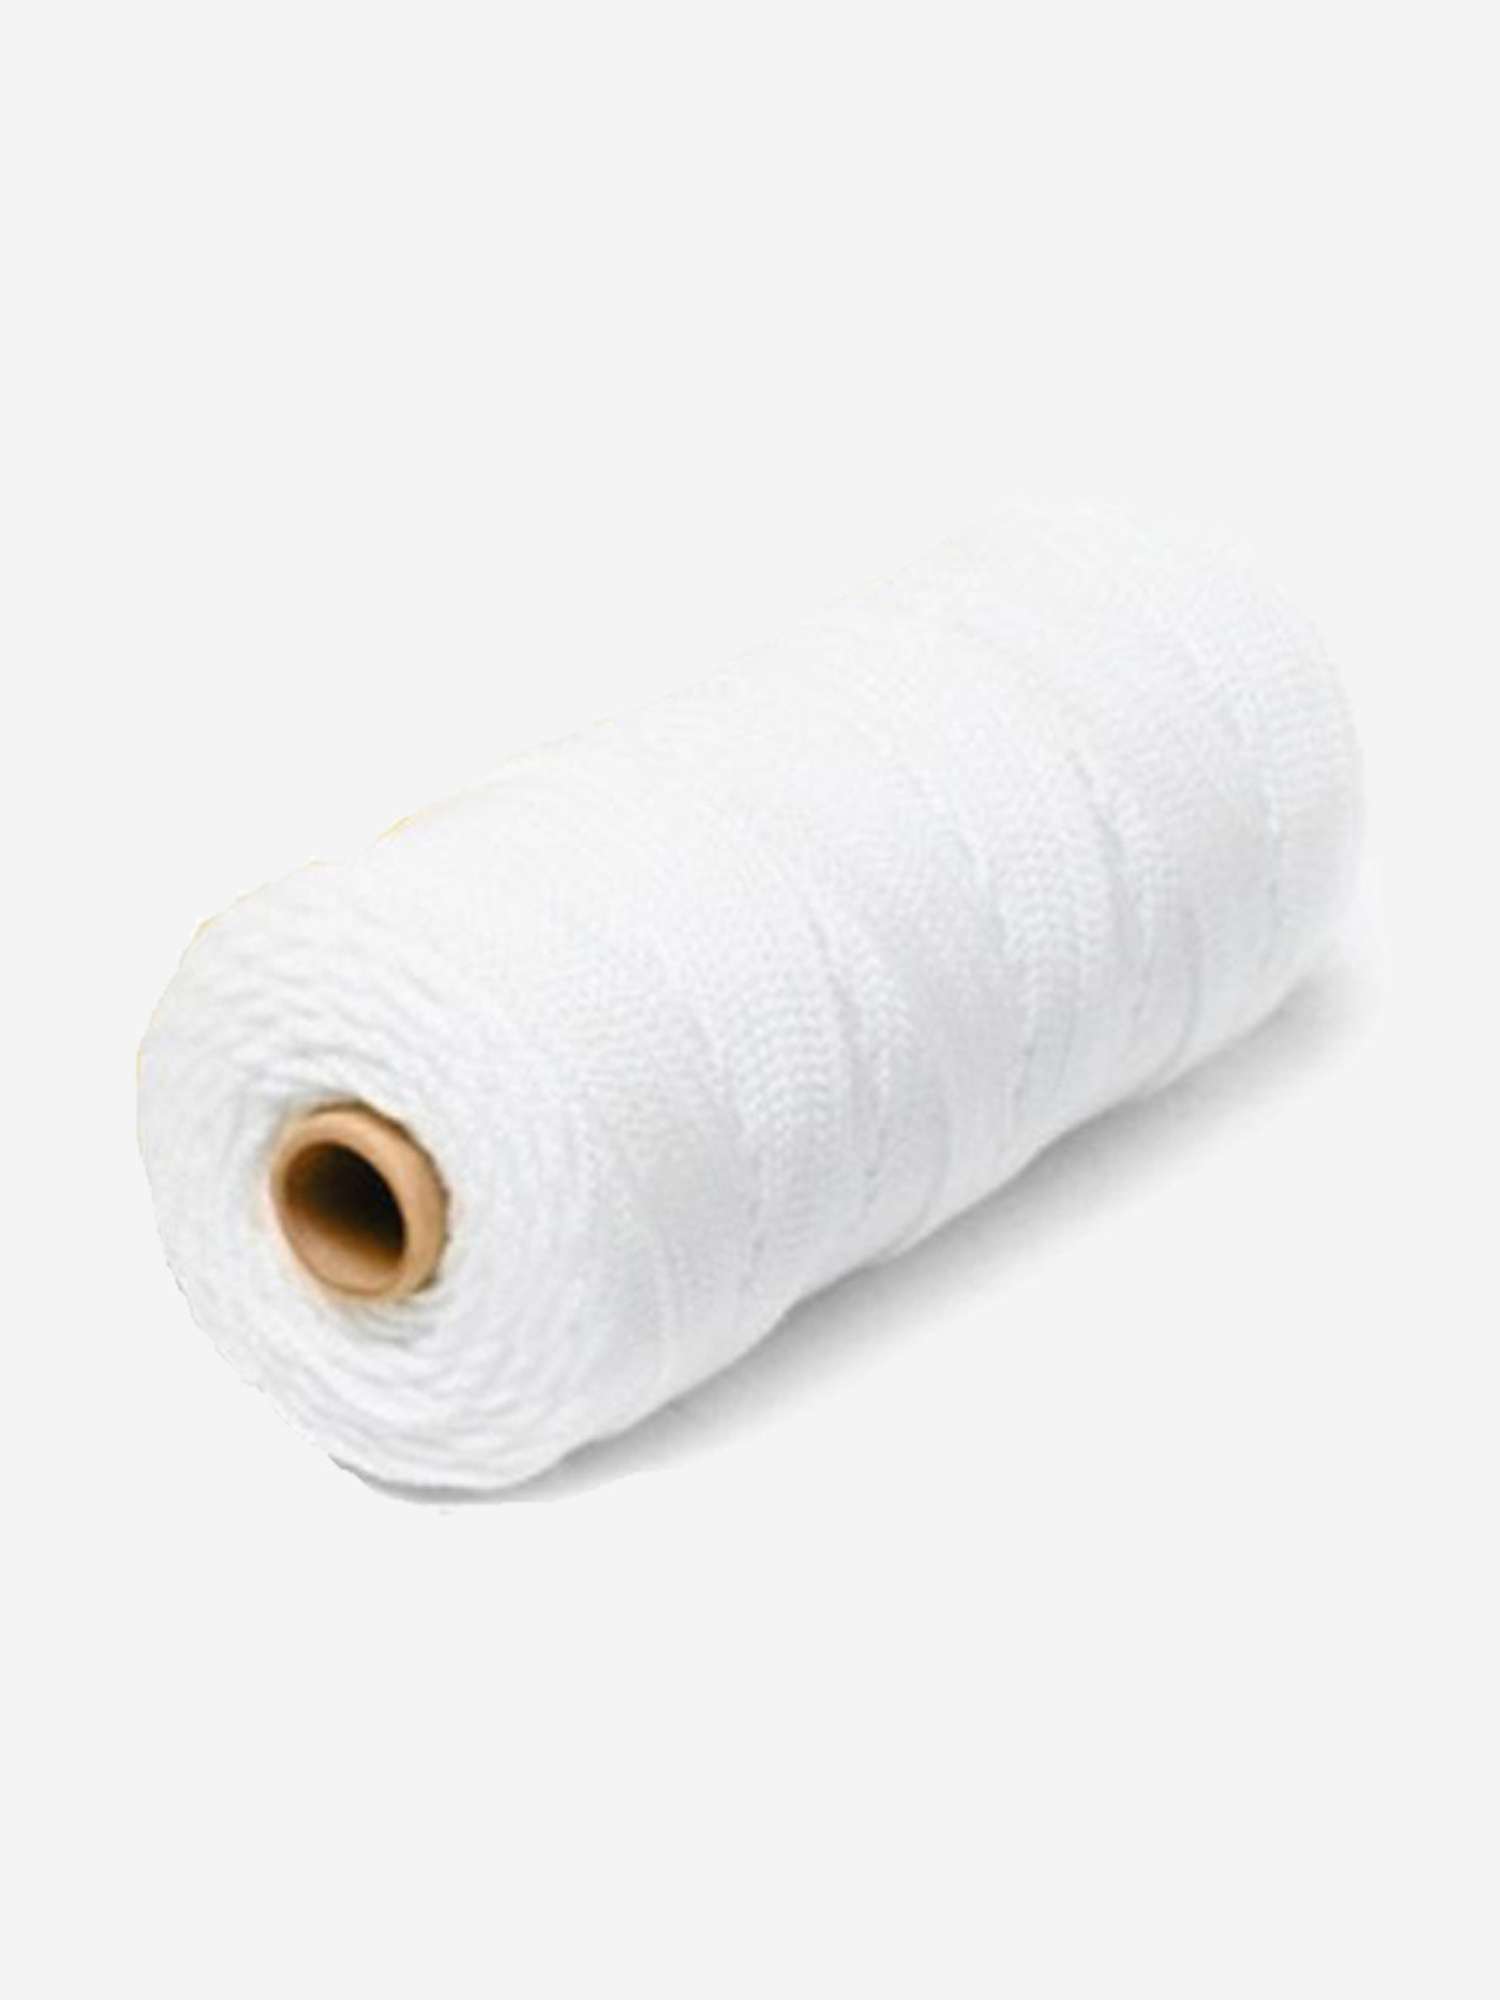 Шнур плетеный Петроканат СТАНДАРТ 10,0 мм (200 м) белый, п/п мешок (промышленный/крепежный), Белый